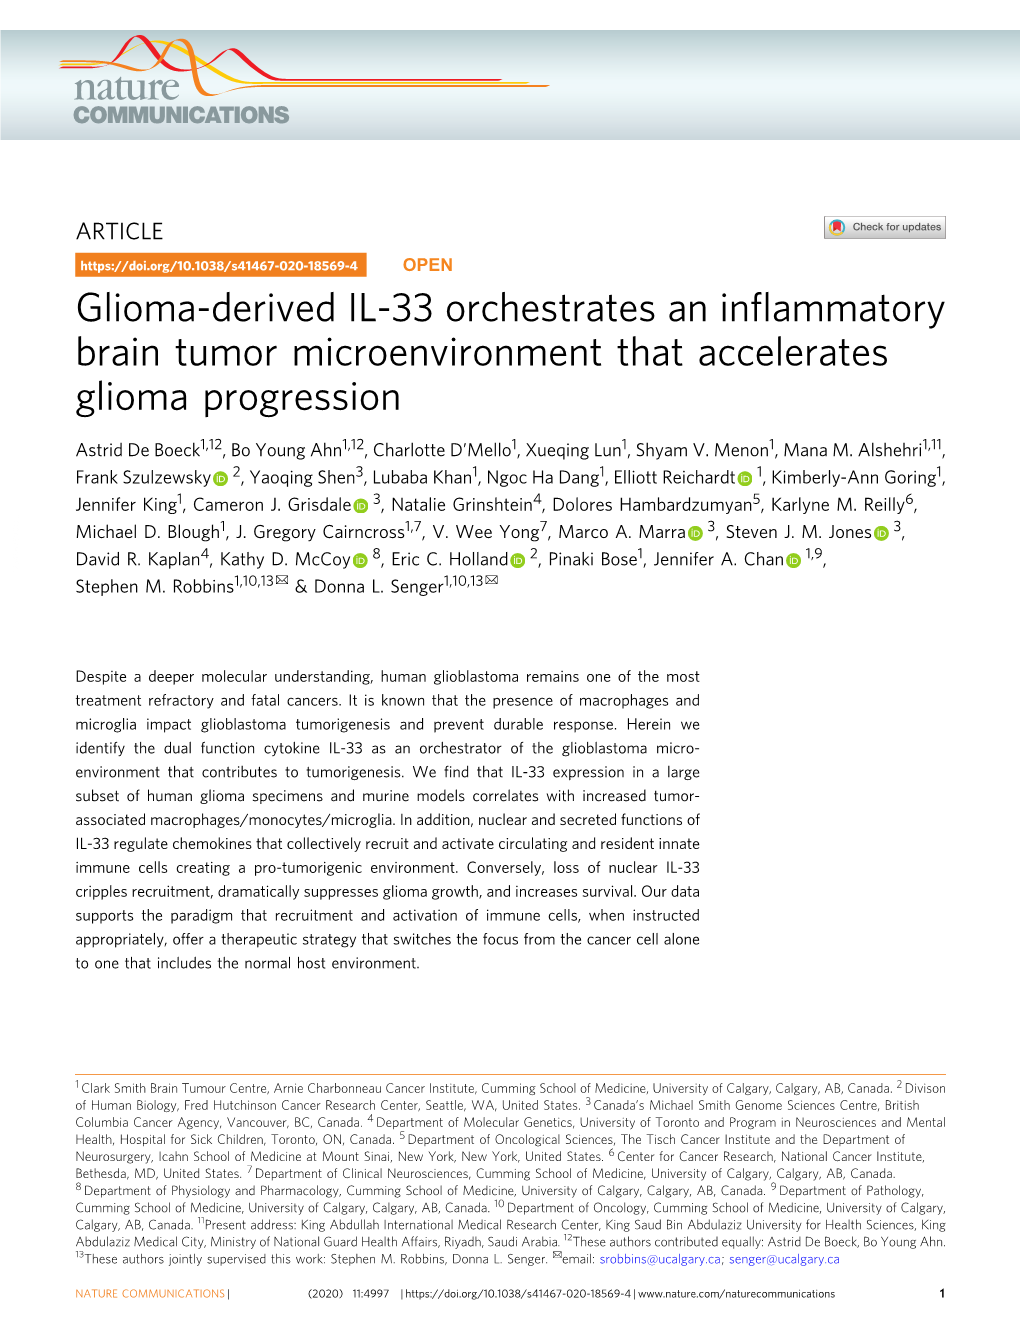 Glioma-Derived IL-33 Orchestrates an Inflammatory Brain Tumor